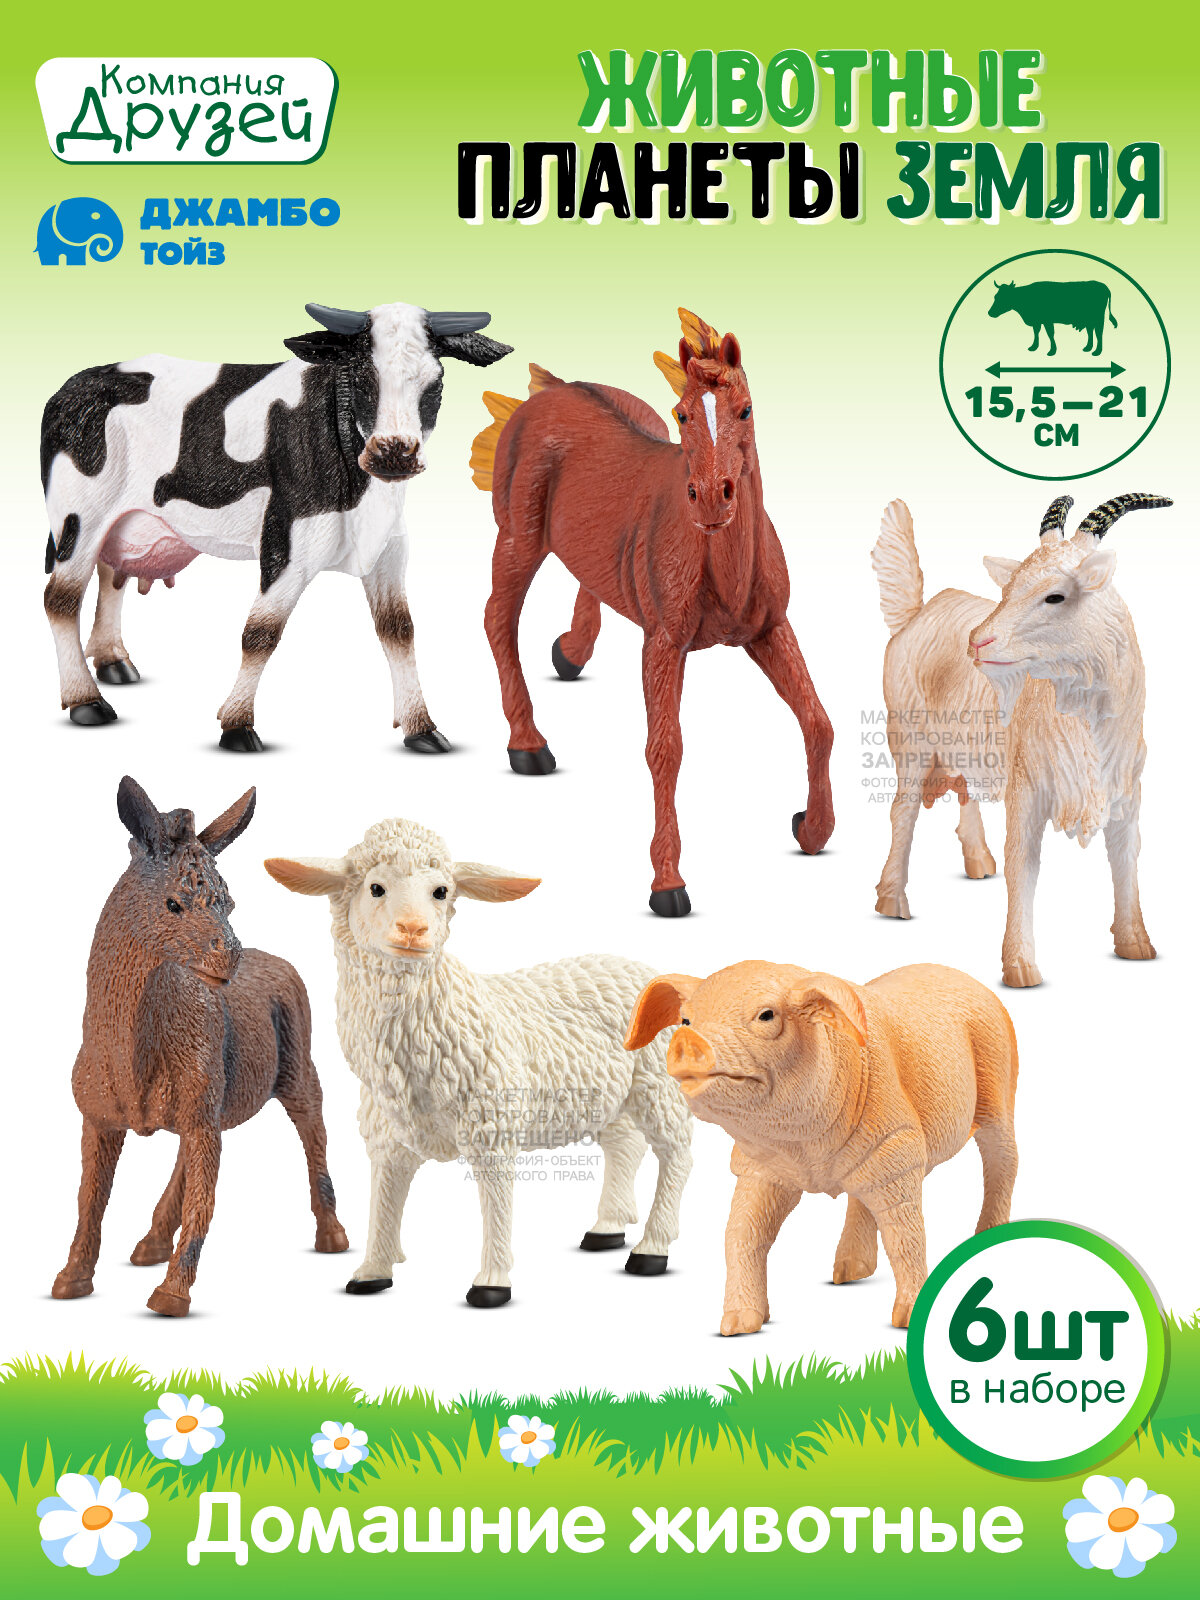 Игровой набор домашние животные ТМ компания друзей, серия "Животные планеты Земля", 6шт, JB0211748